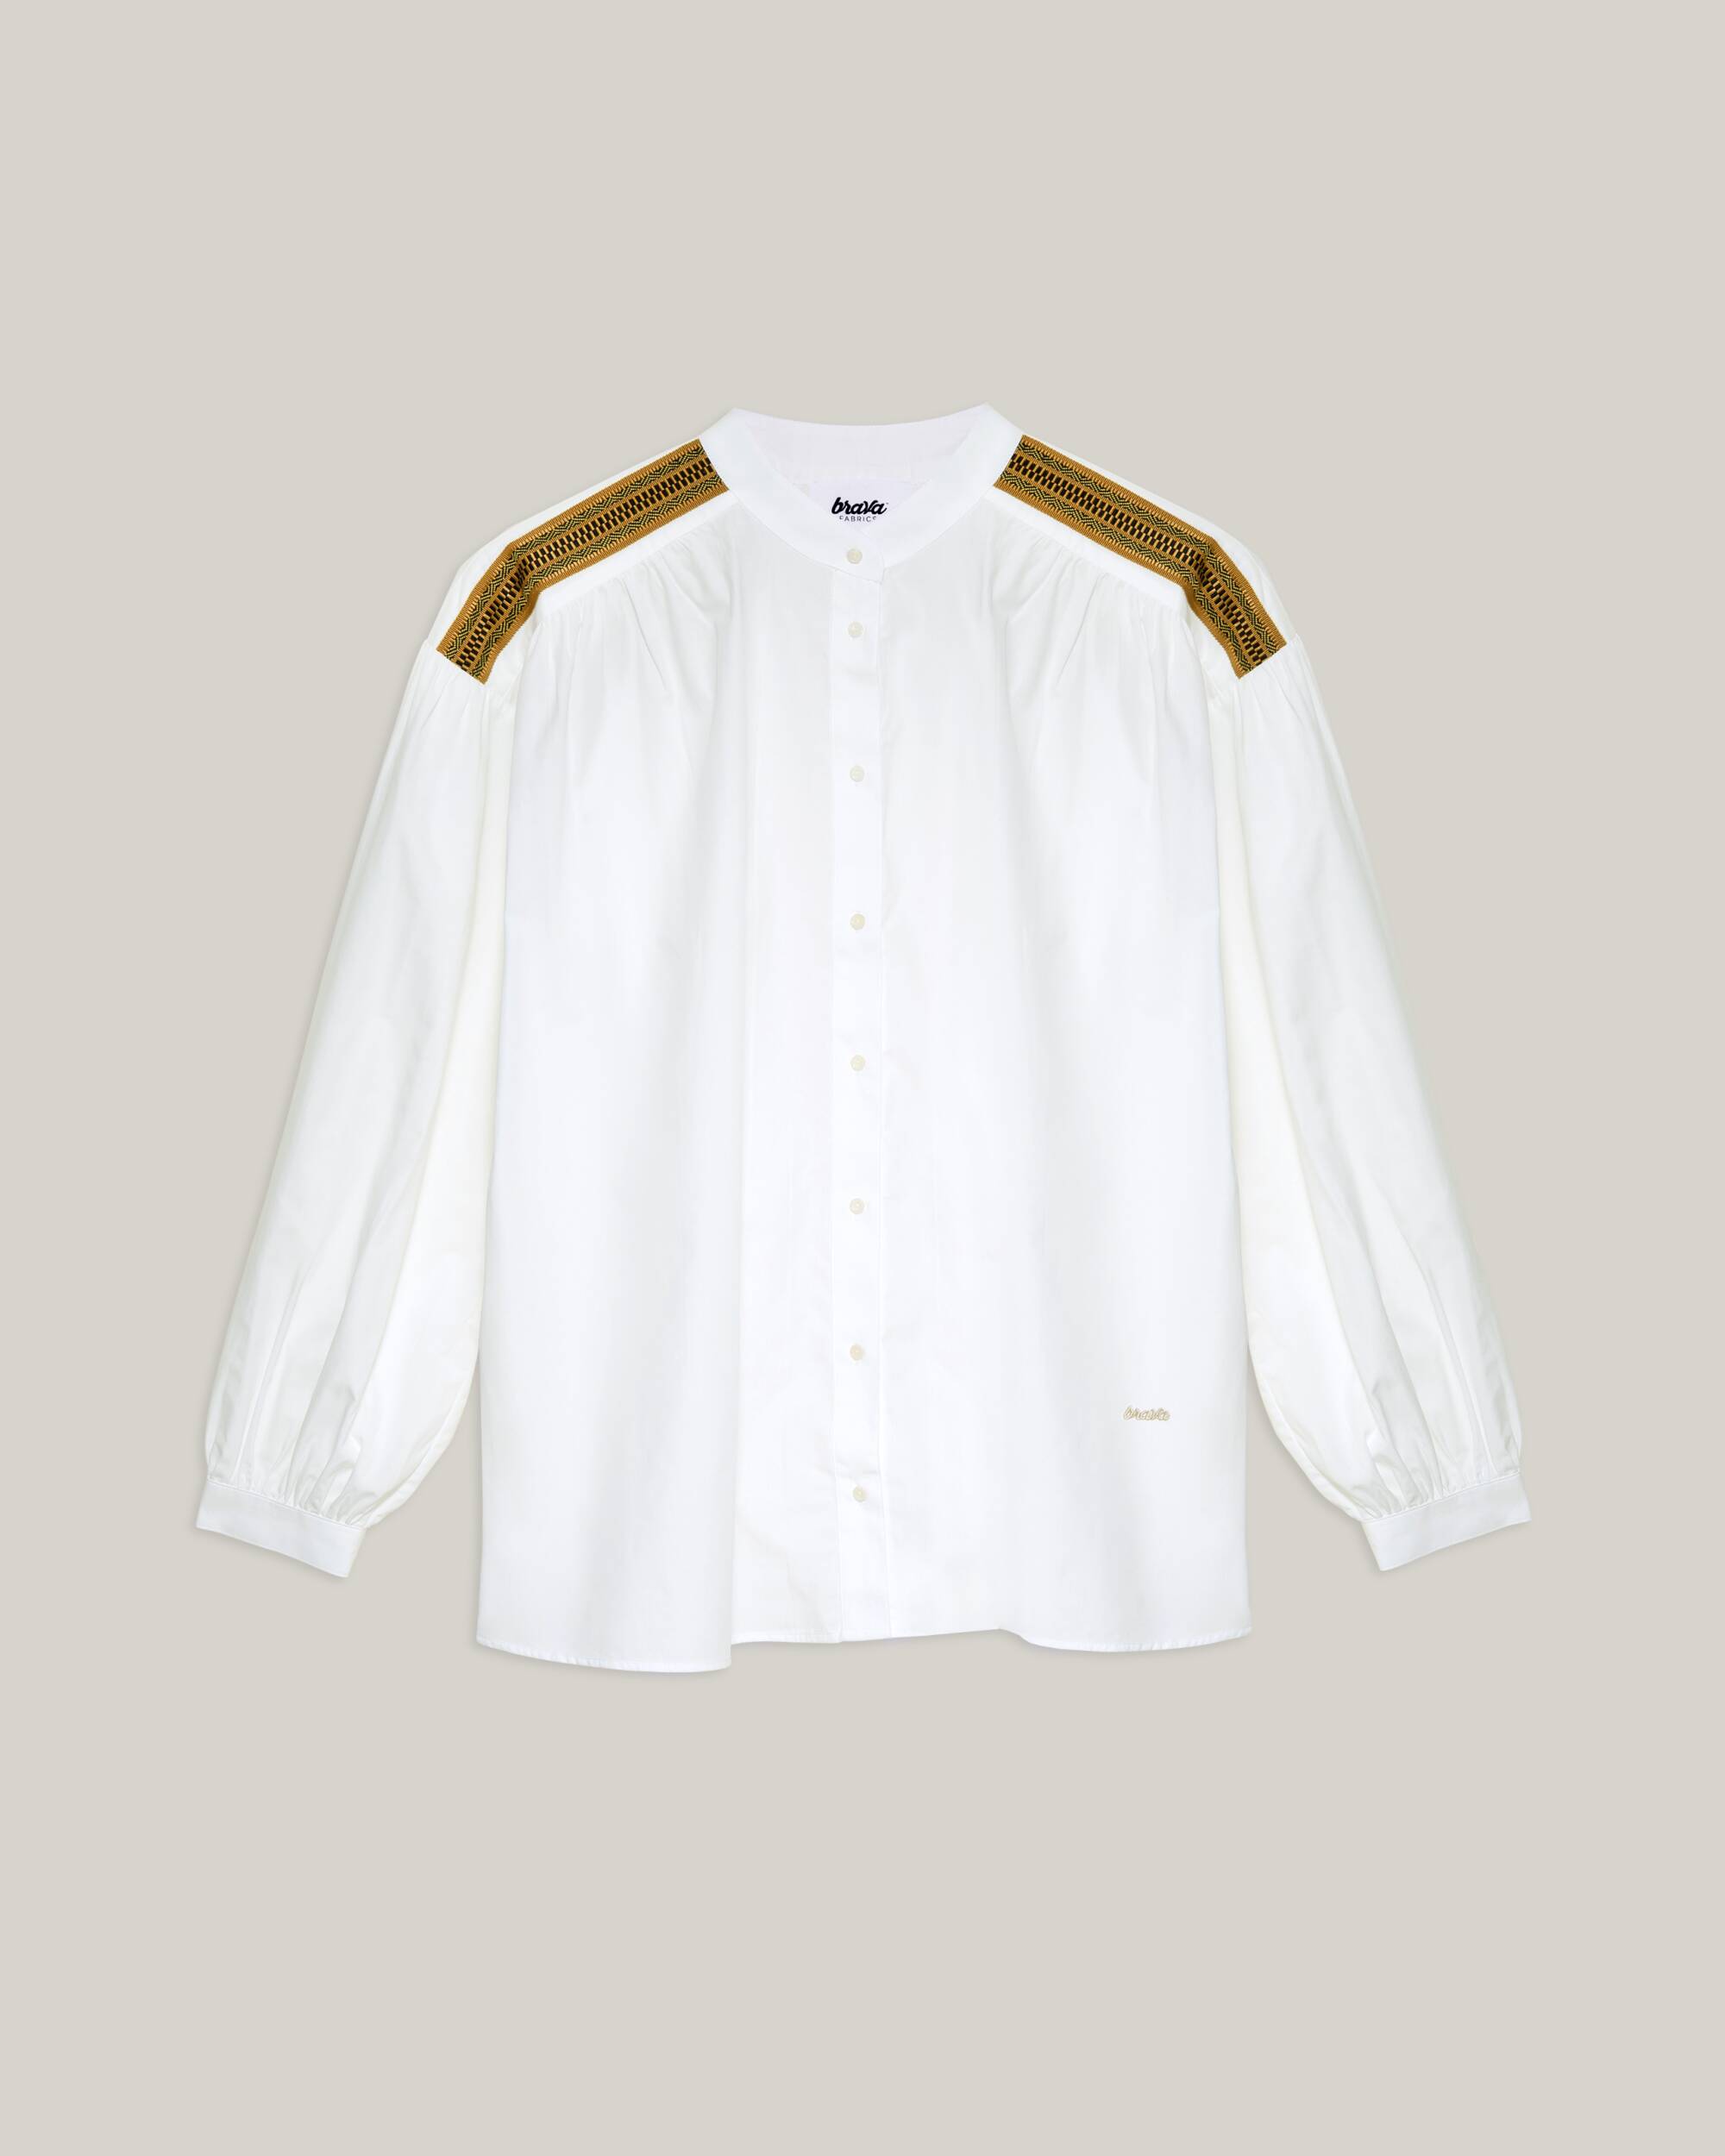 Oversized Bluse "Ribbon Boho" in off-white / beige aus 100% Bio - Baumwolle von Brava Fabrics